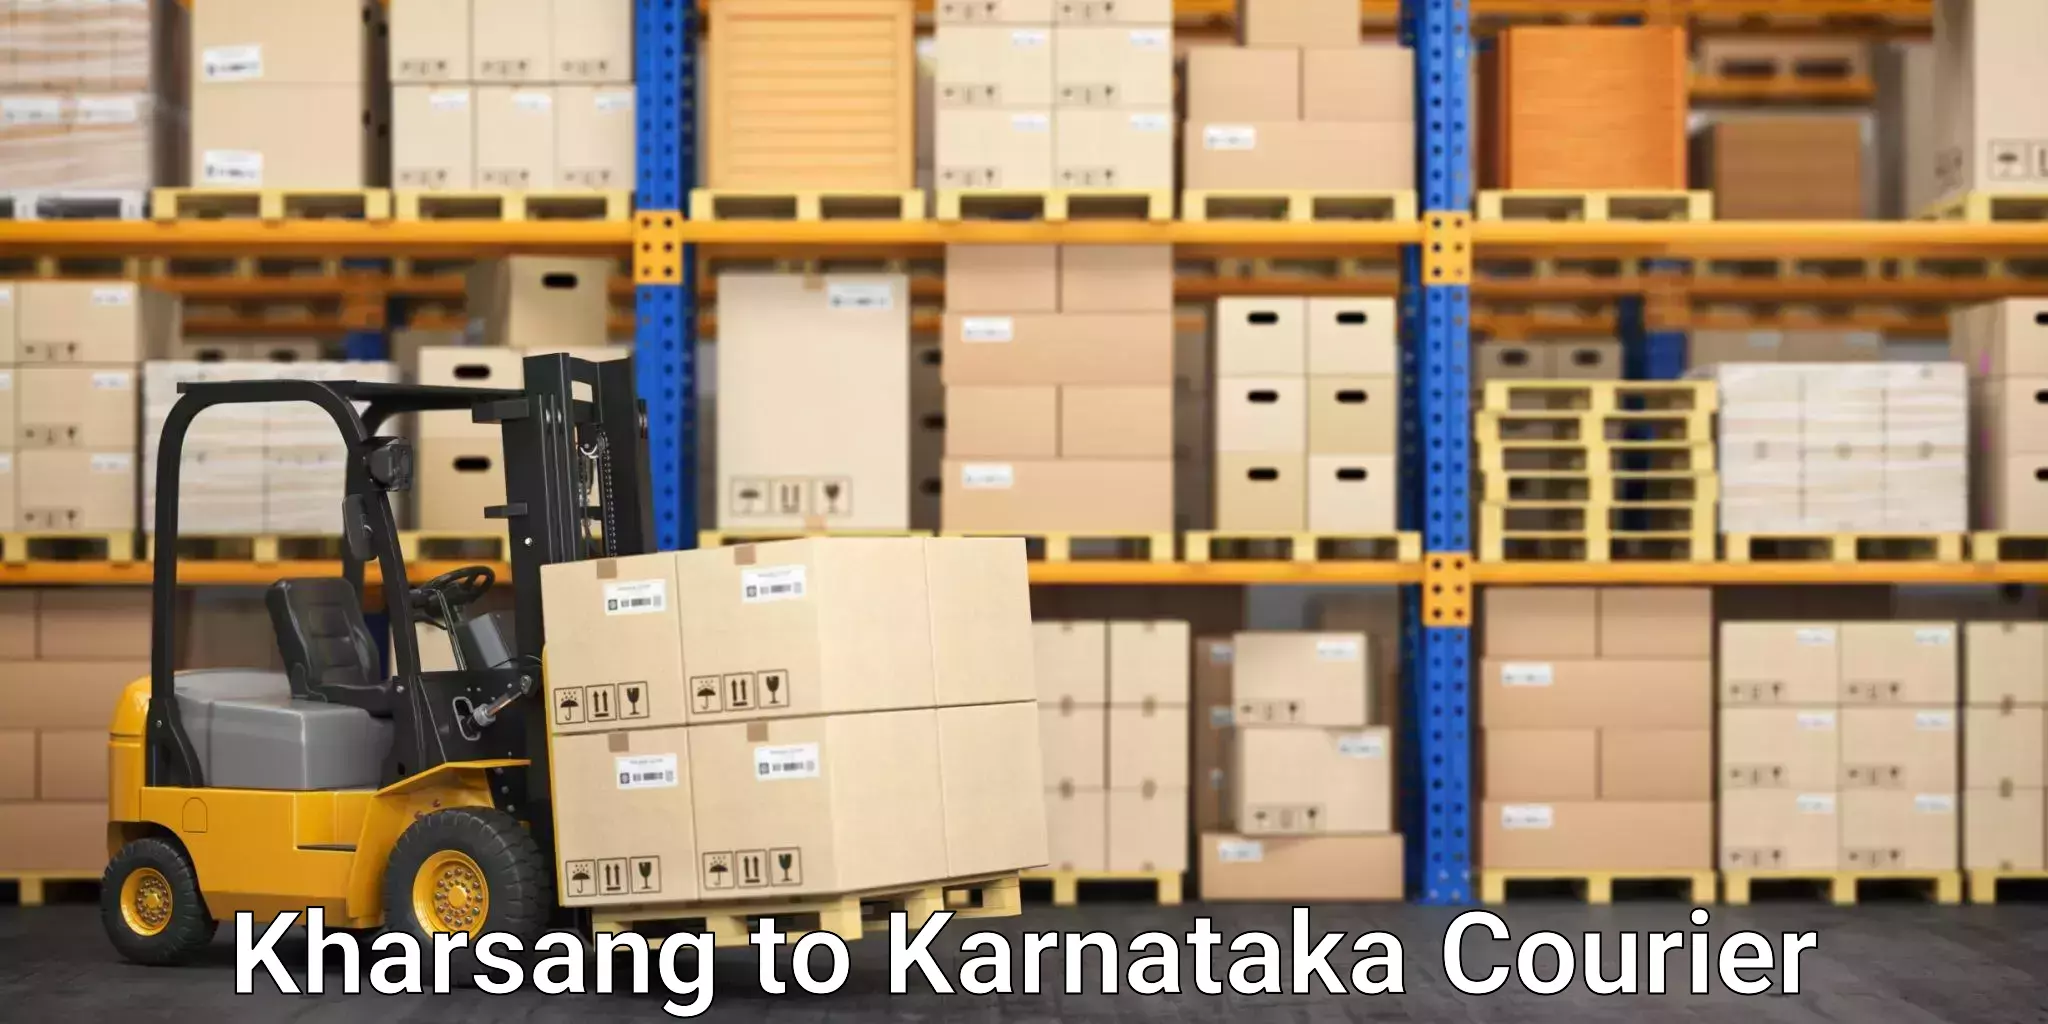 Medical delivery services Kharsang to Karnataka